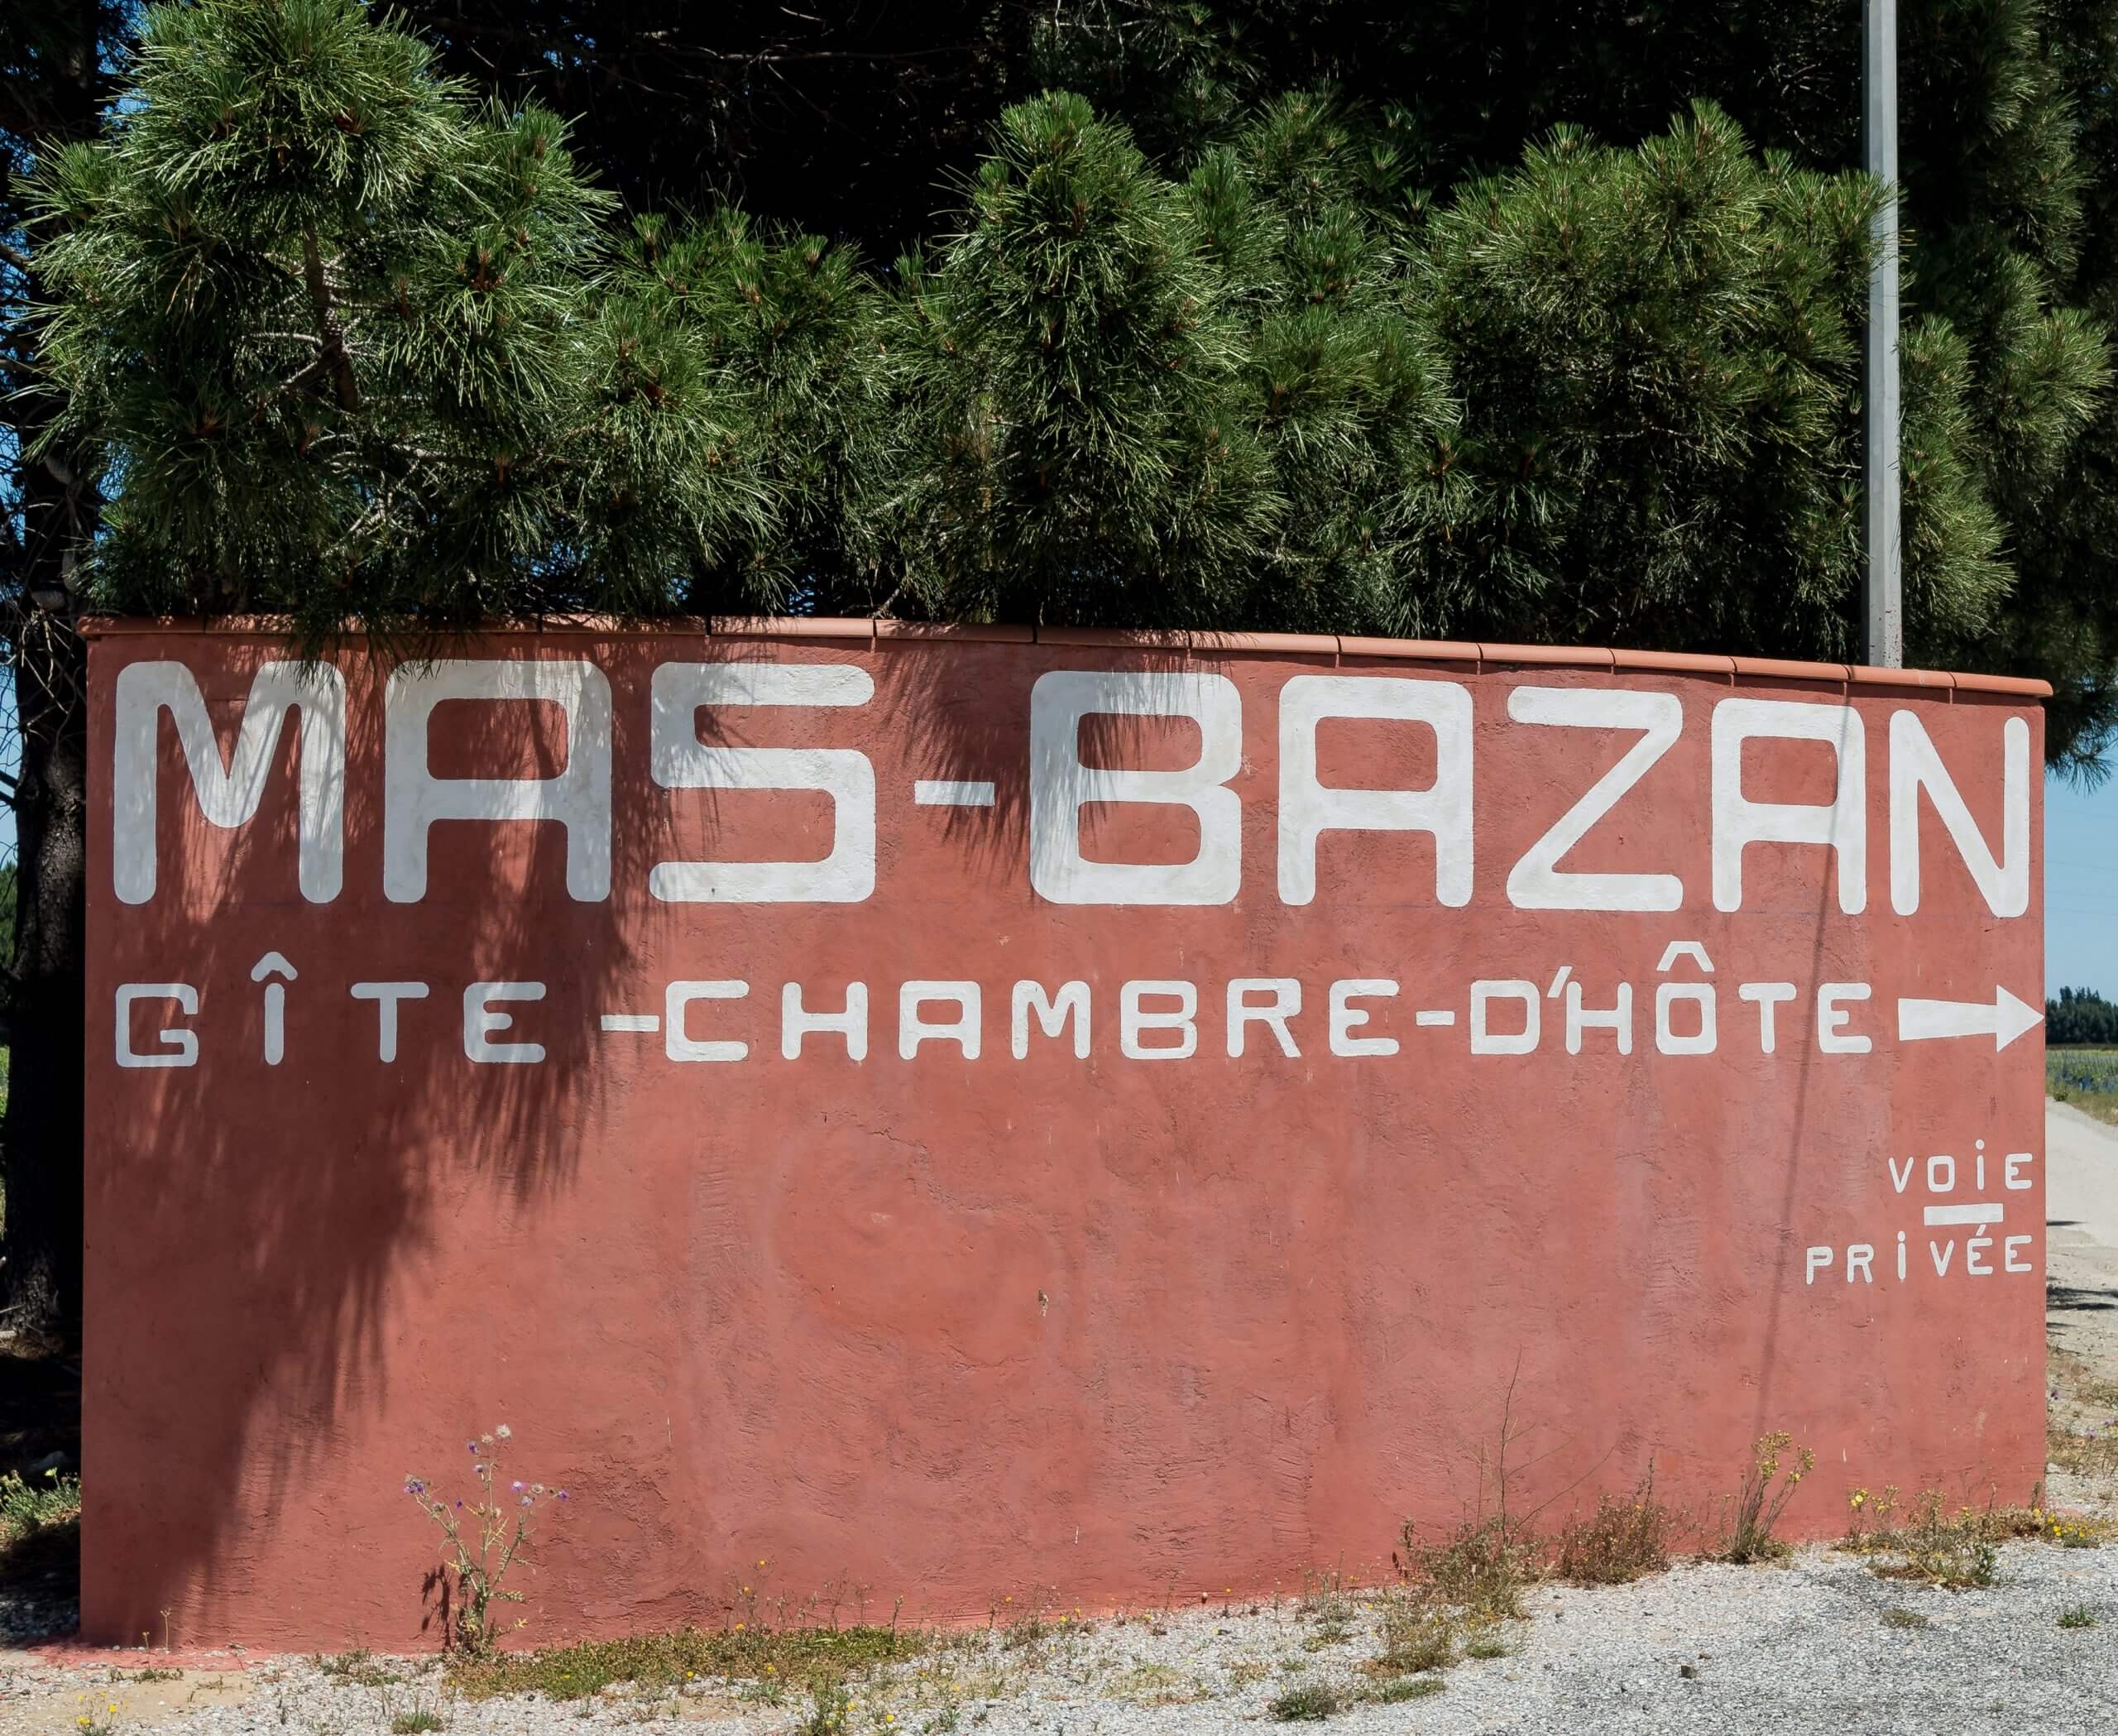 Gites et Chambres Hôtes le Mas Bazan prêt de Collioure